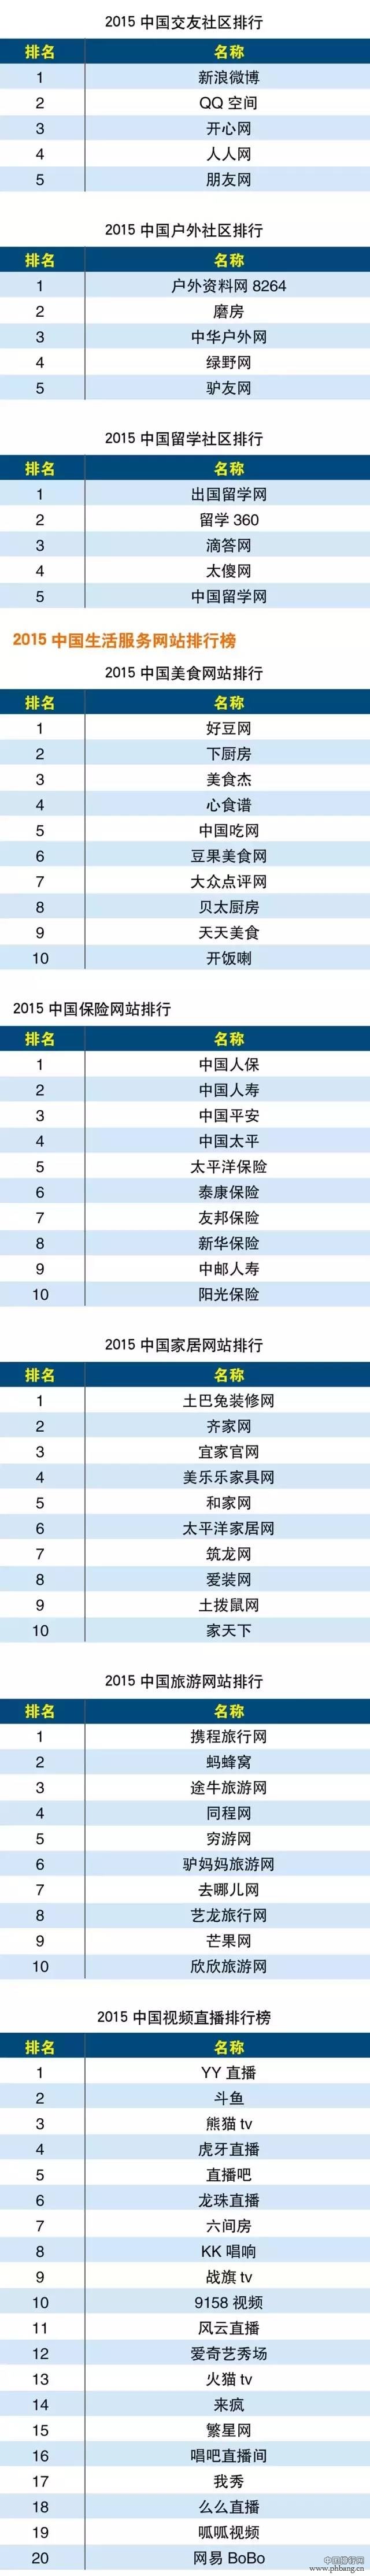 2015年度中国互联网分类排行榜